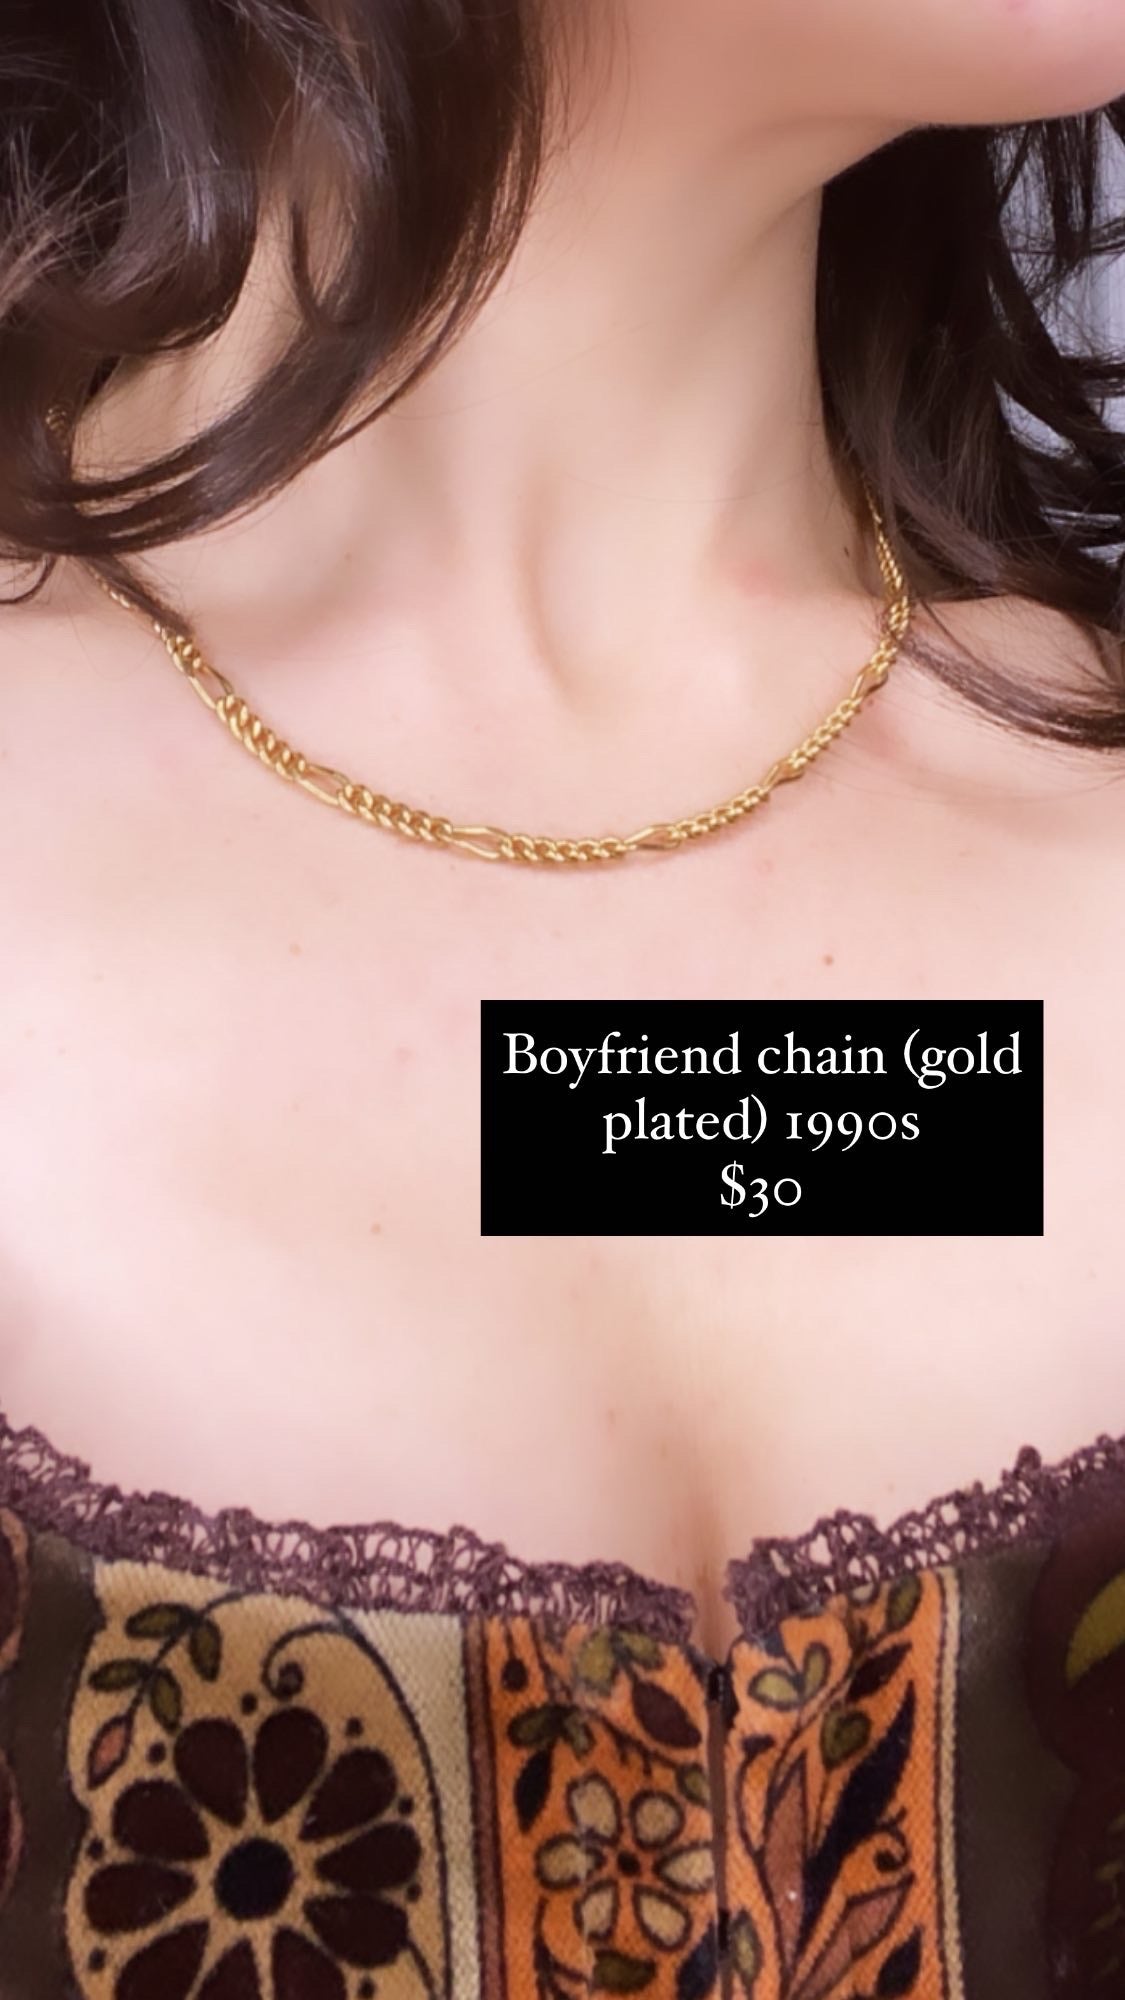 Boyfriend chain, 1990’s